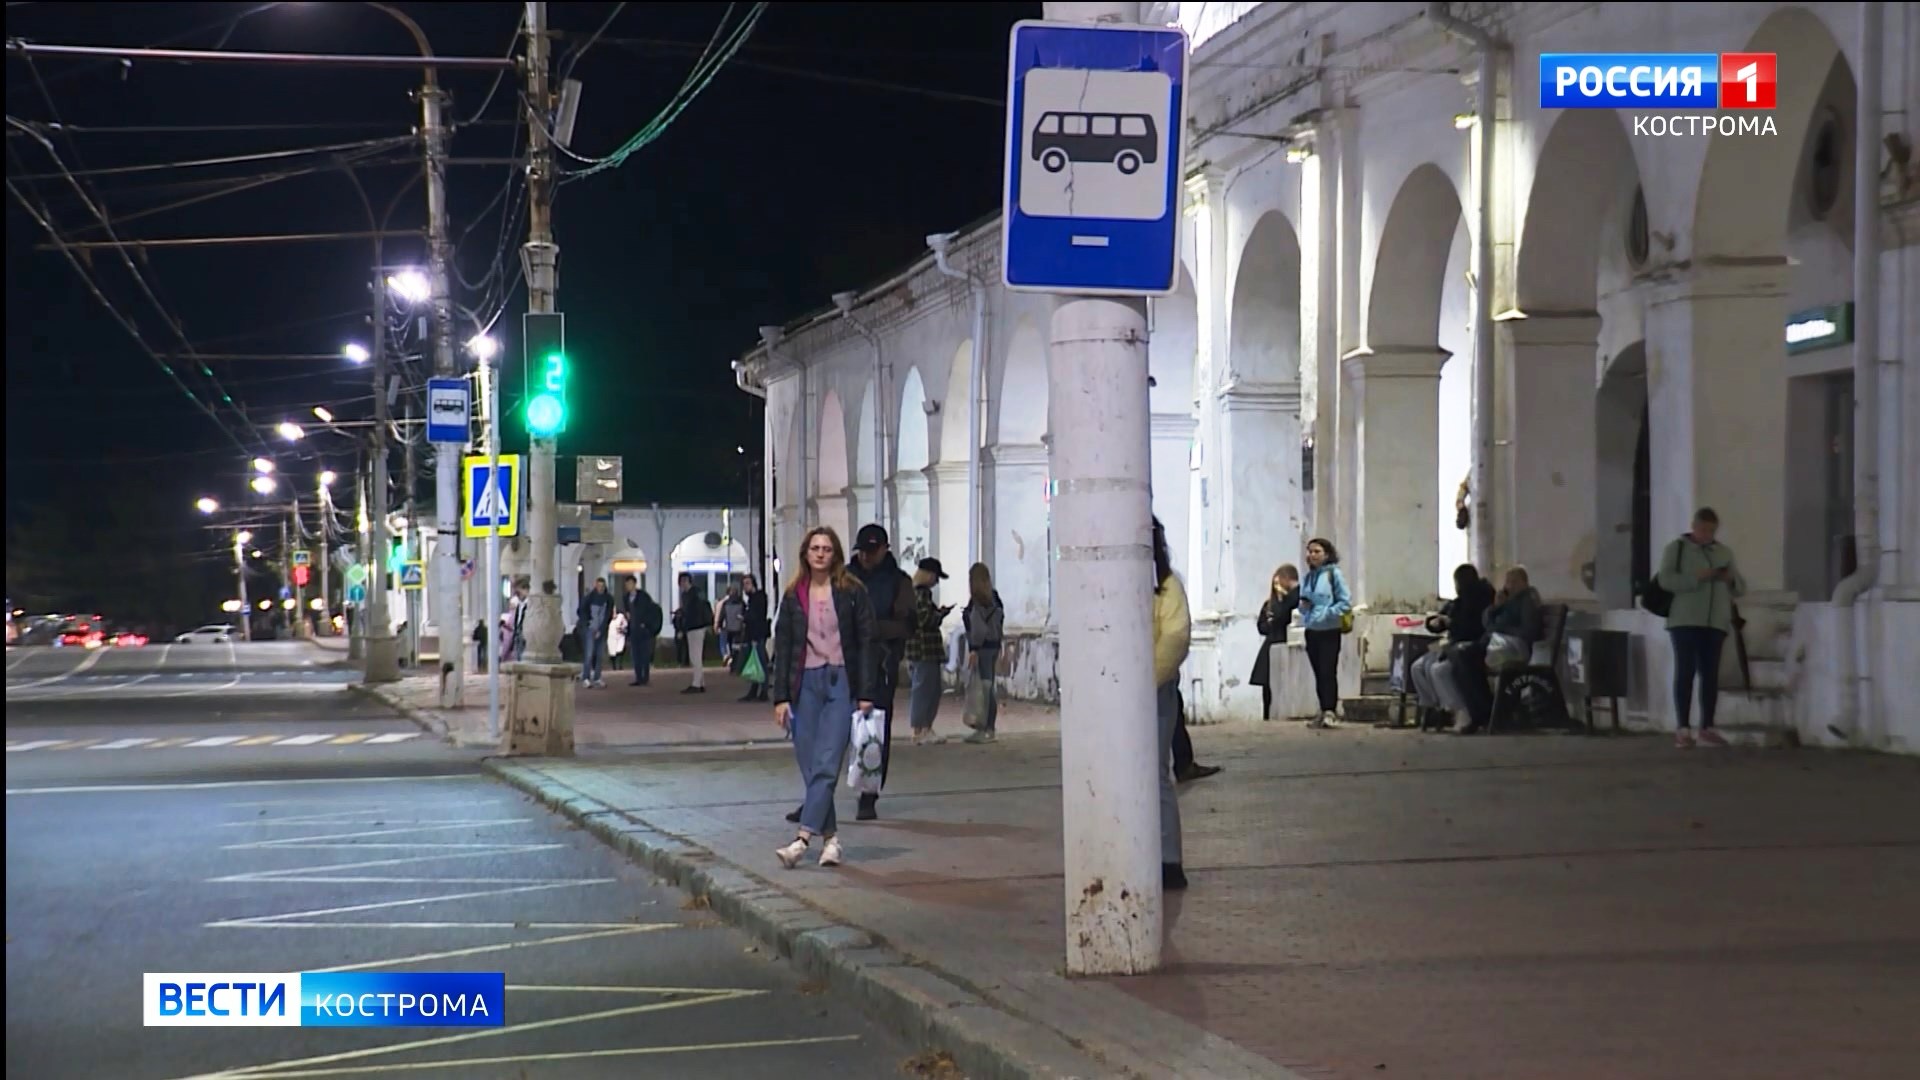 В расписании есть, на улицах нет: новая транспортная схема не избавила Кострому от «неуловимых» автобусов